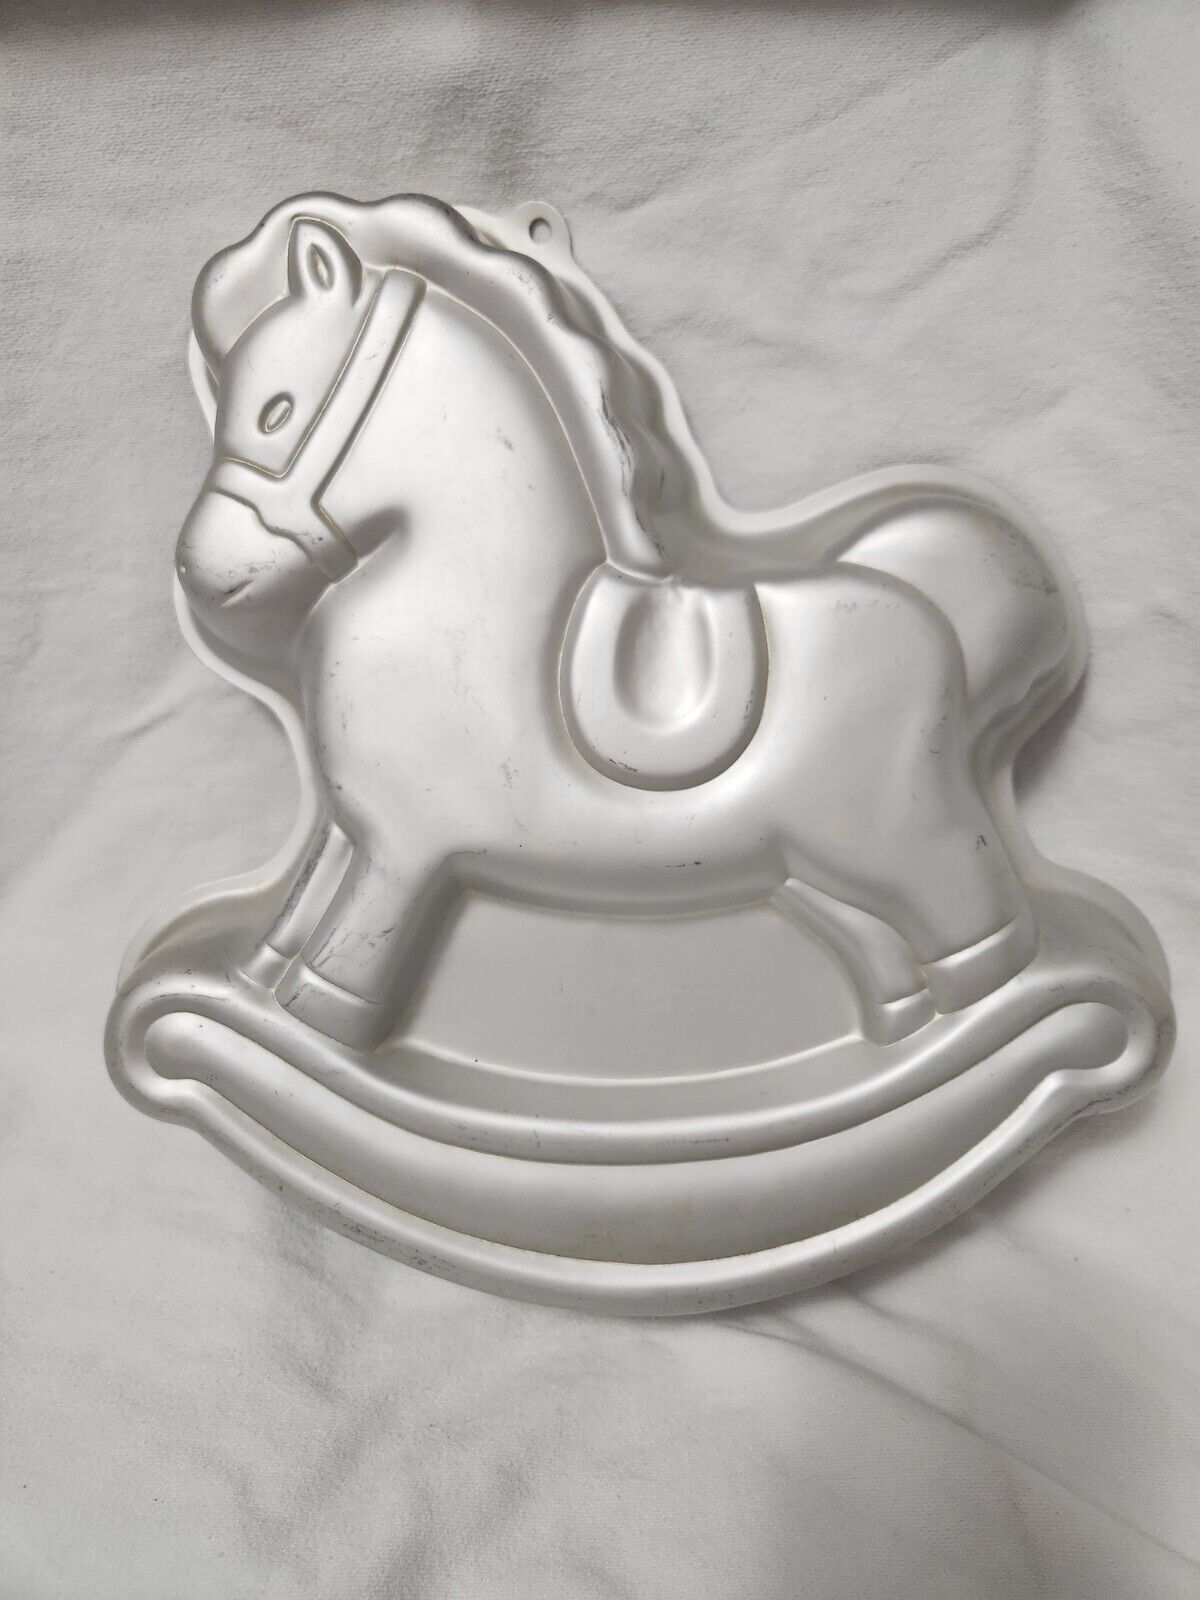 Vintage Wilton Rocking Horse Cake Pan 2105-2388 1984